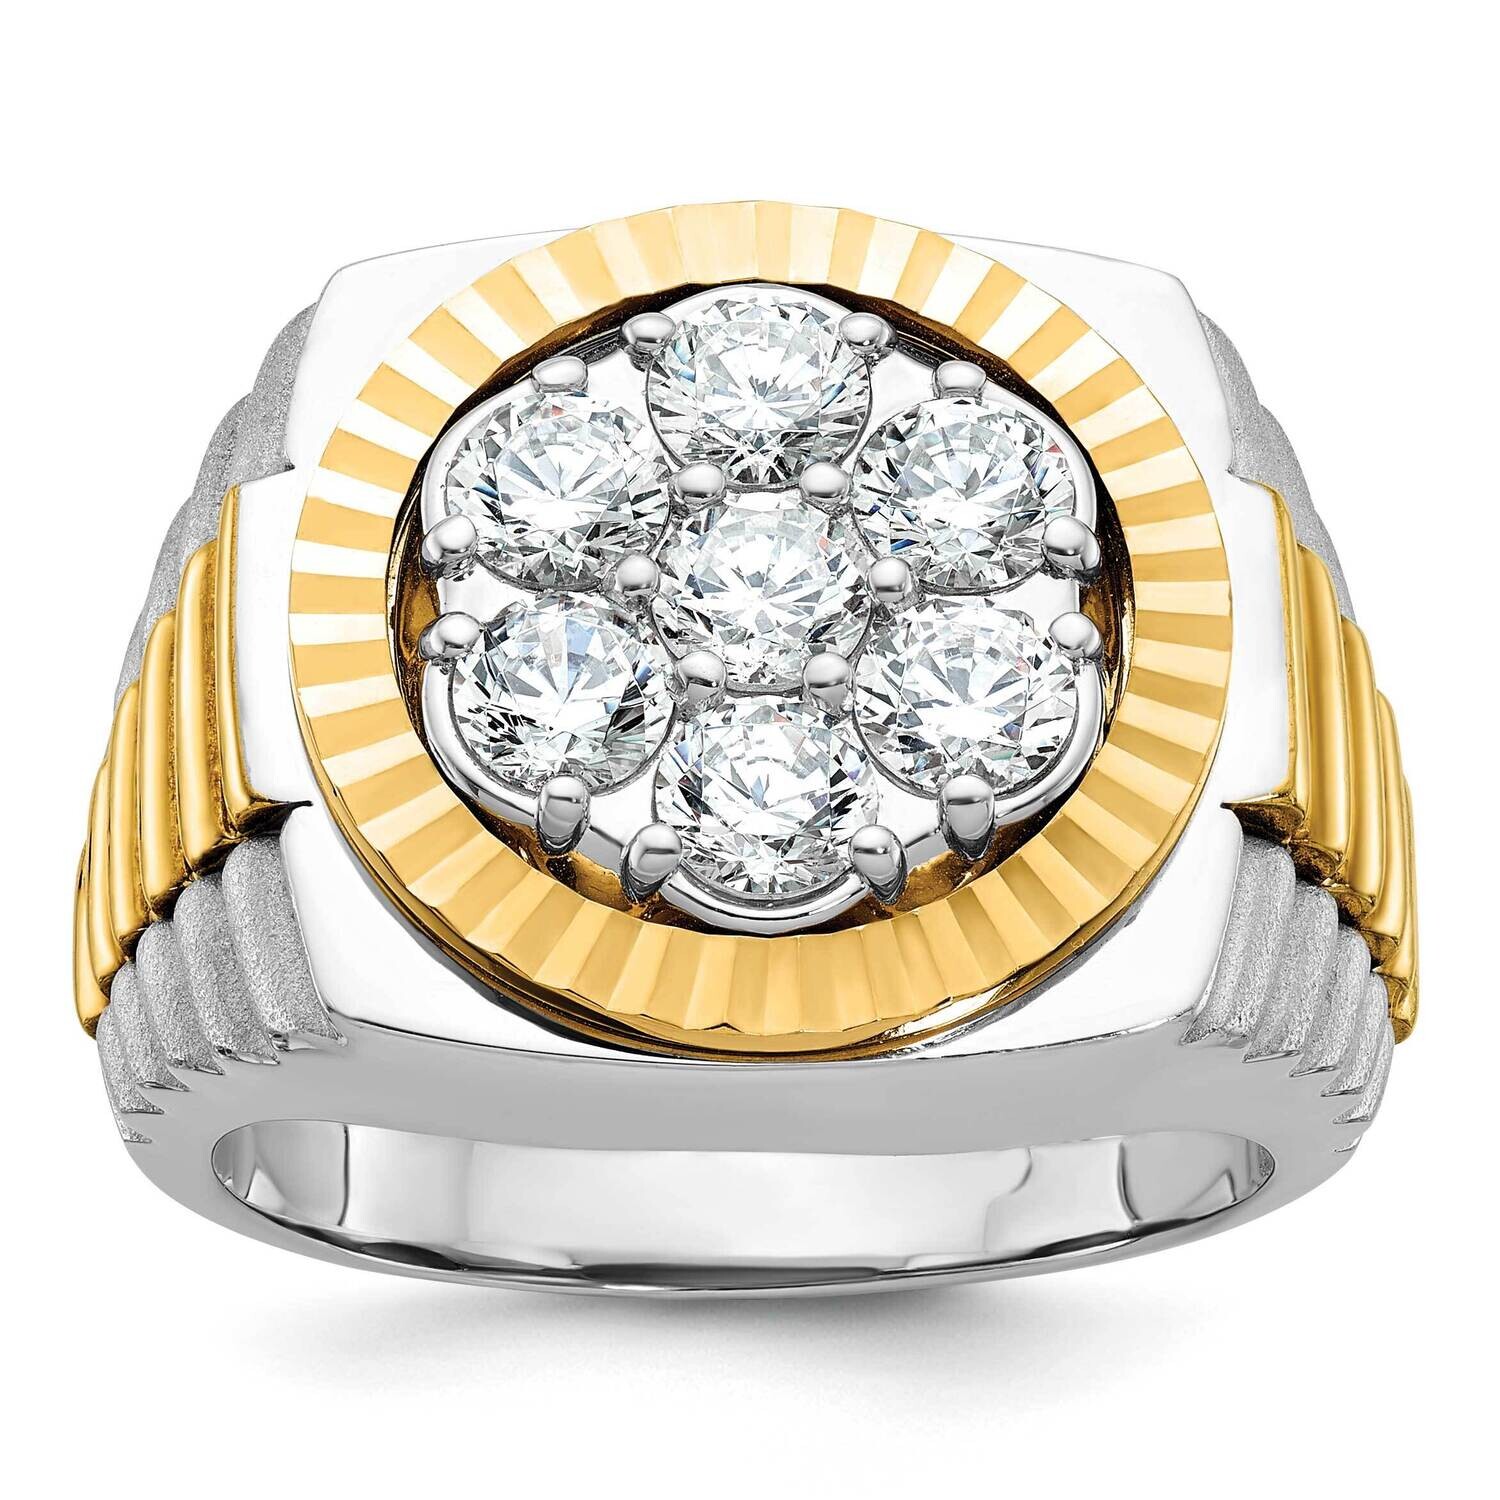 Ibgoodman Men's Diamond Ring Mounting 14k Two-Tone Gold B58290-4WY